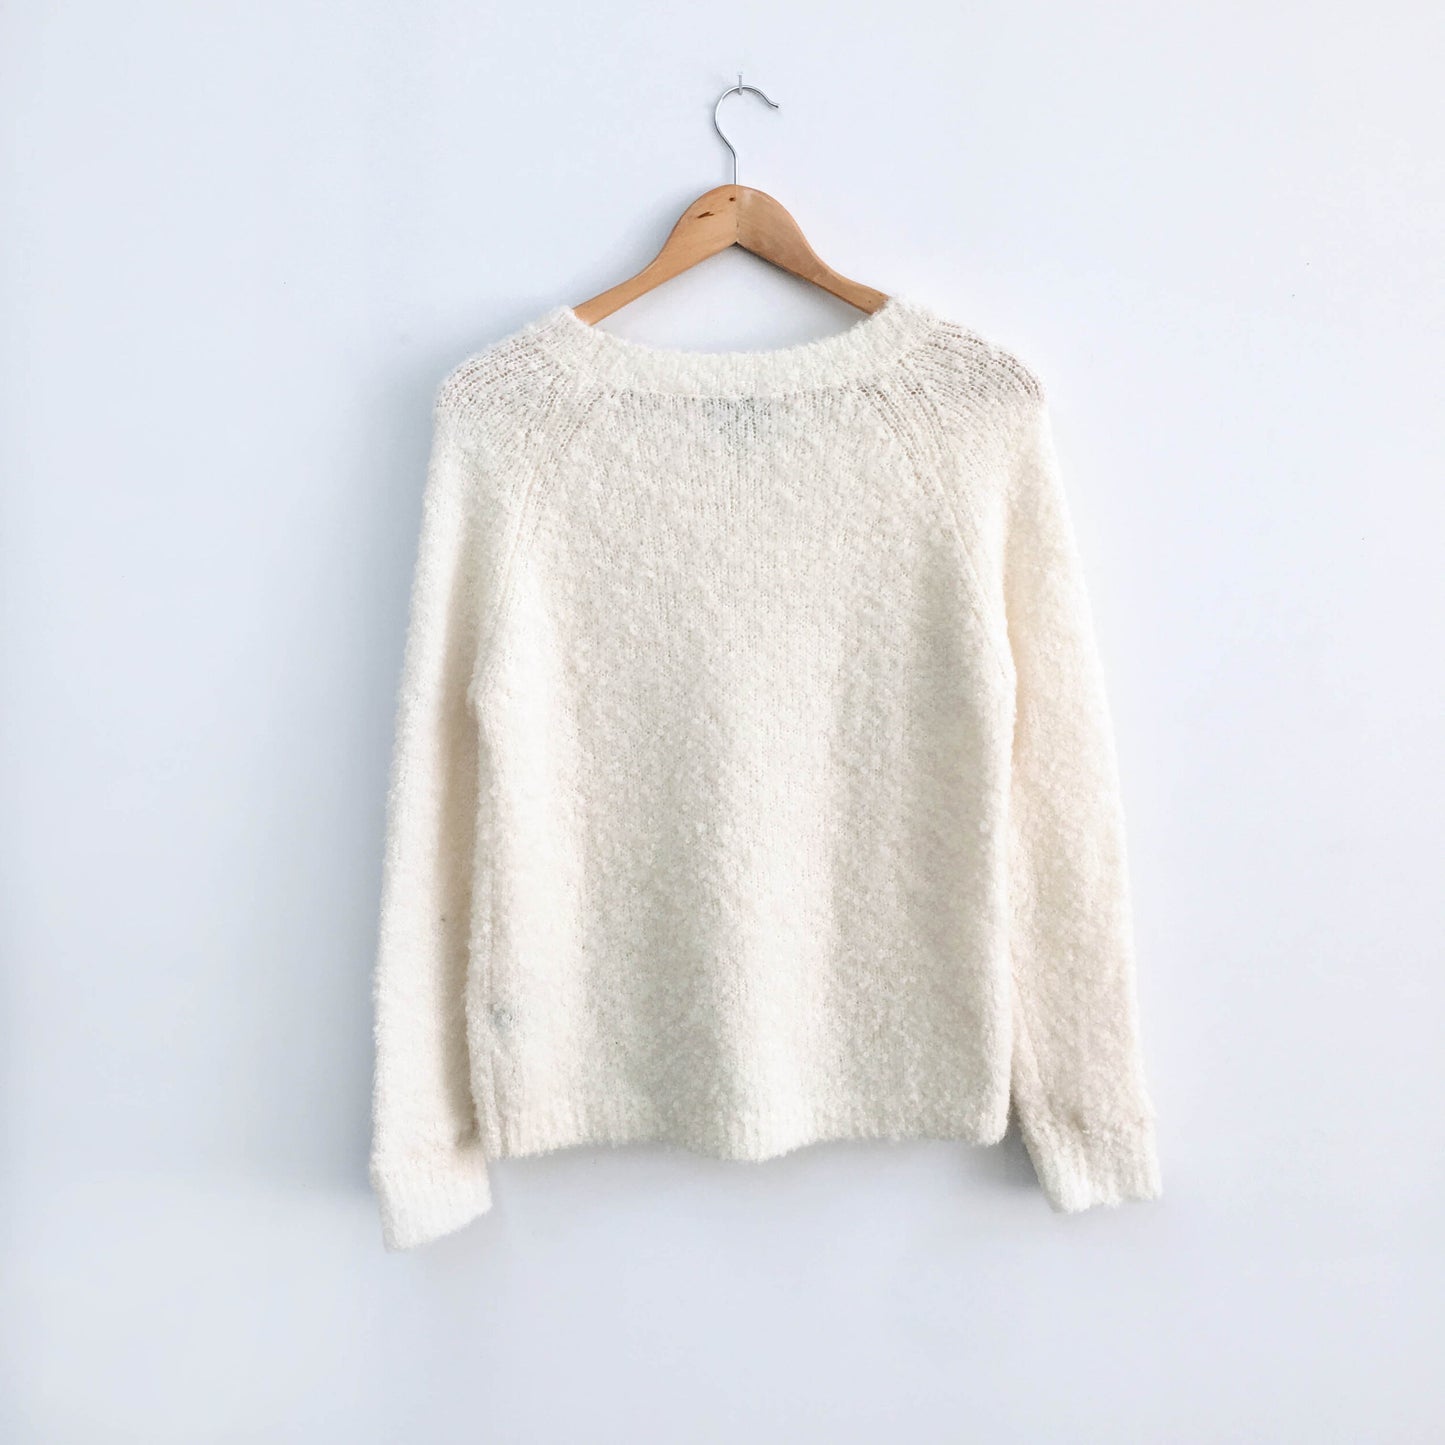 Club Monaco Wool Alpaca Sweater - size xs